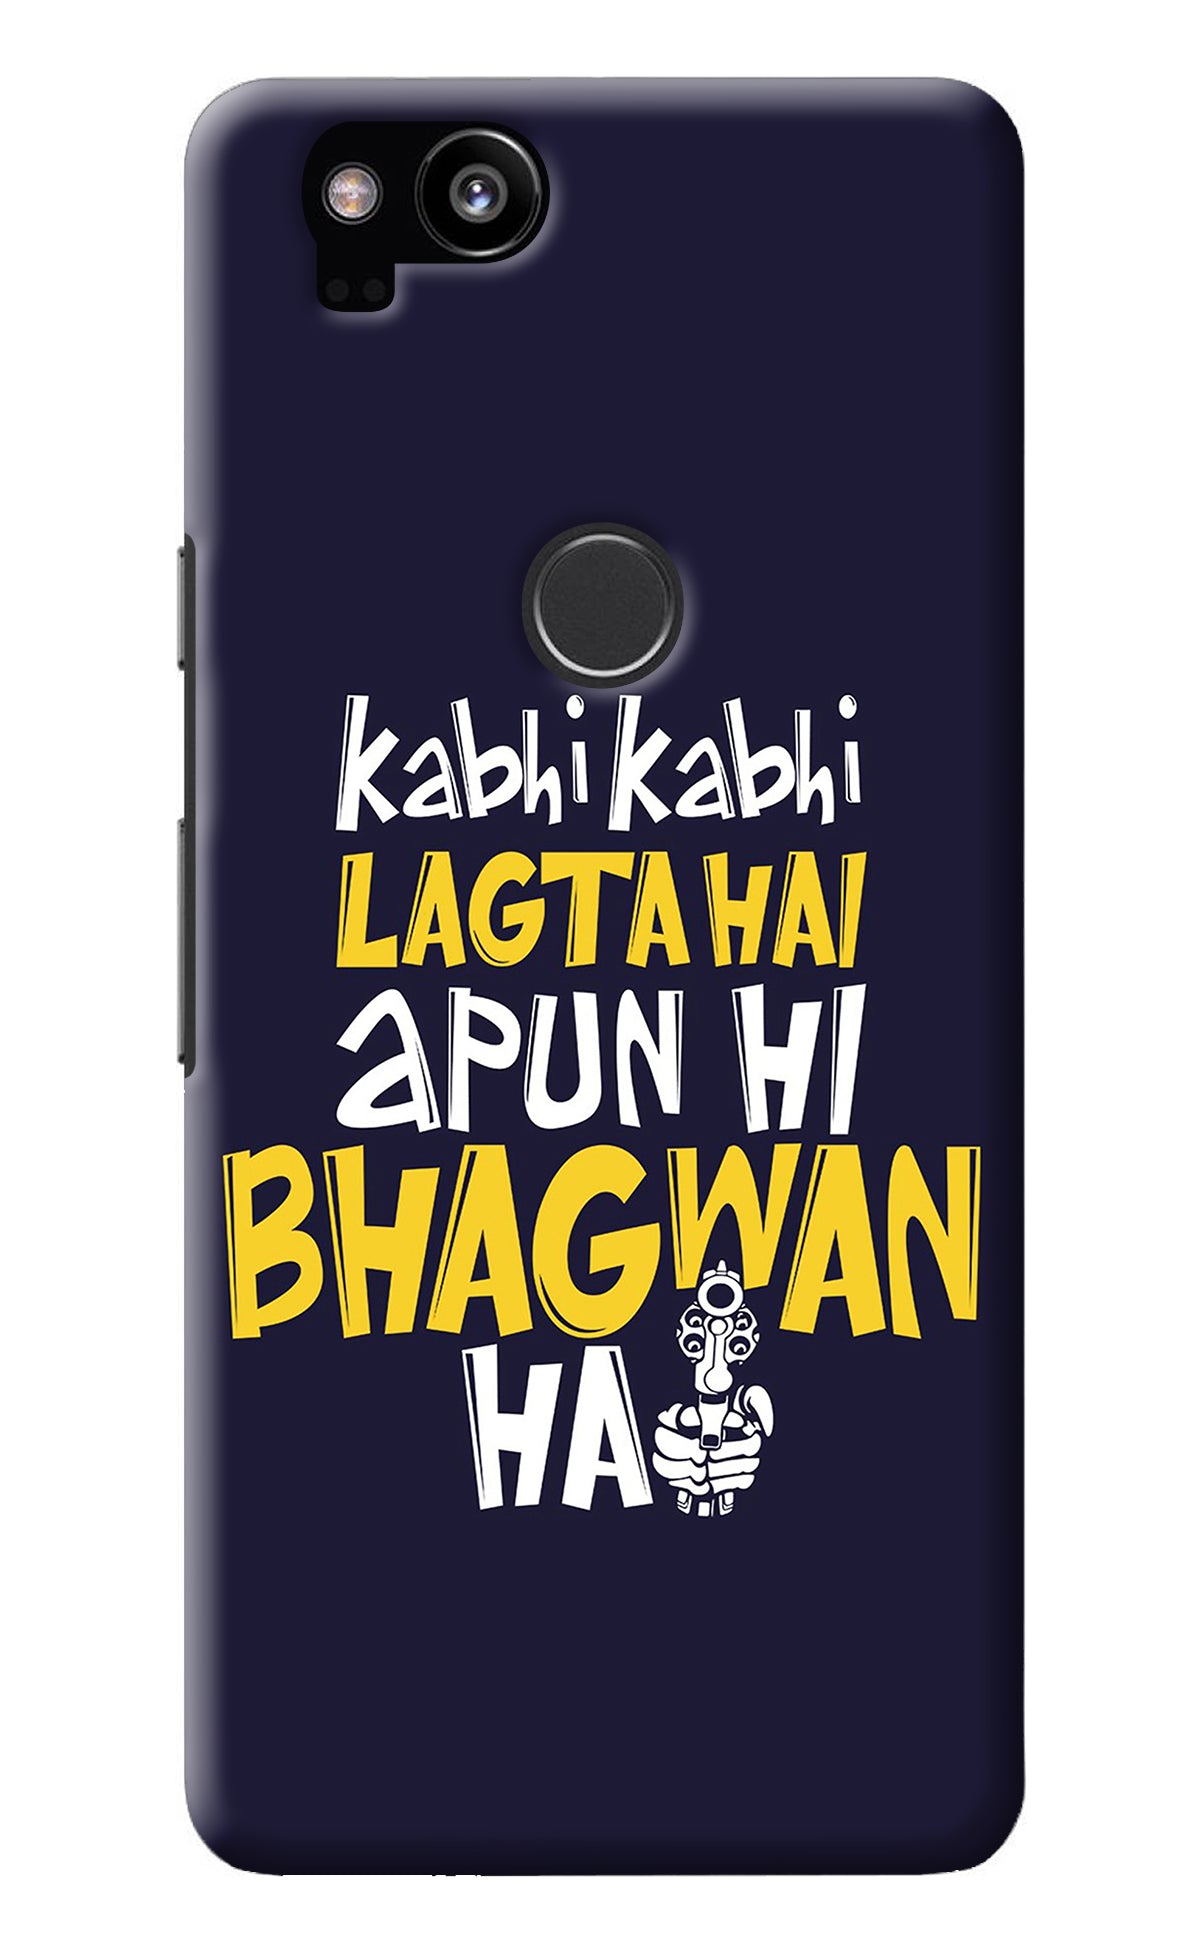 Kabhi Kabhi Lagta Hai Apun Hi Bhagwan Hai Google Pixel 2 Back Cover